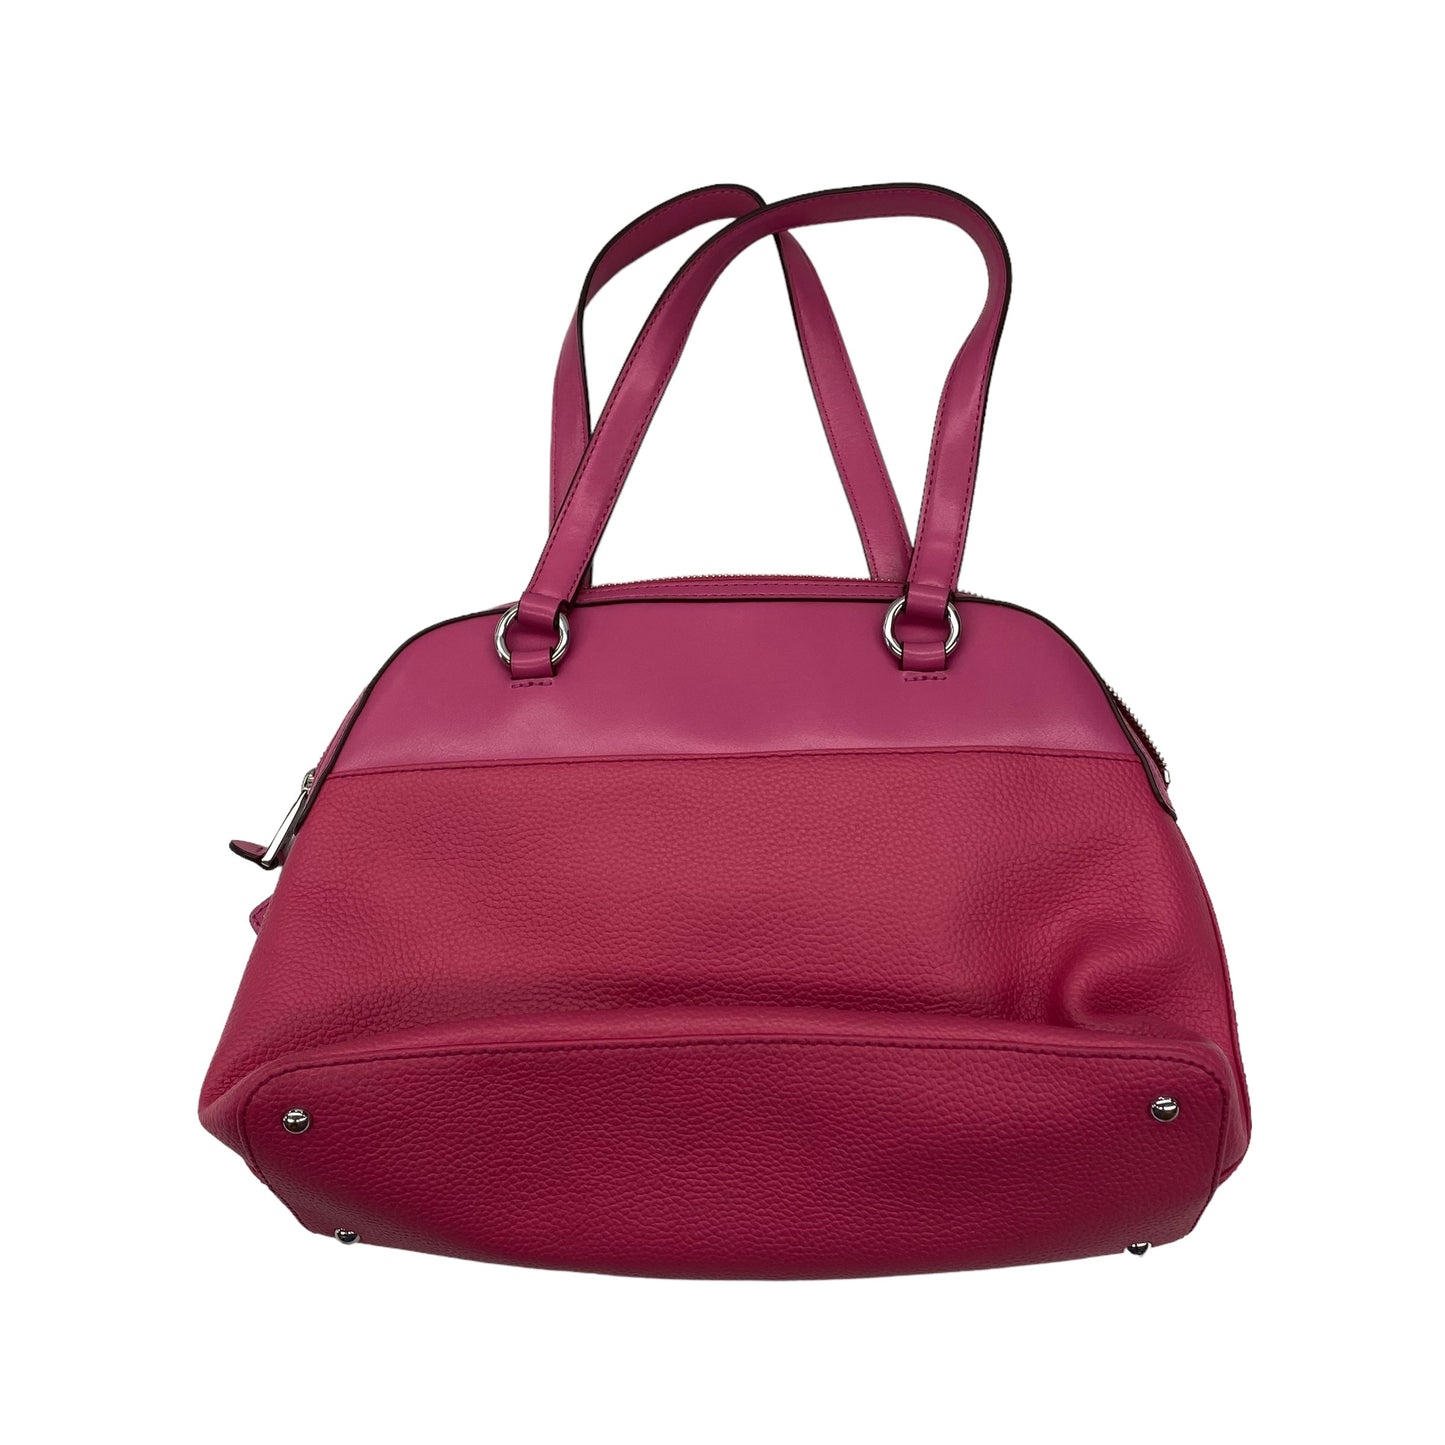 Handbag By Lauren By Ralph Lauren  Size: Medium